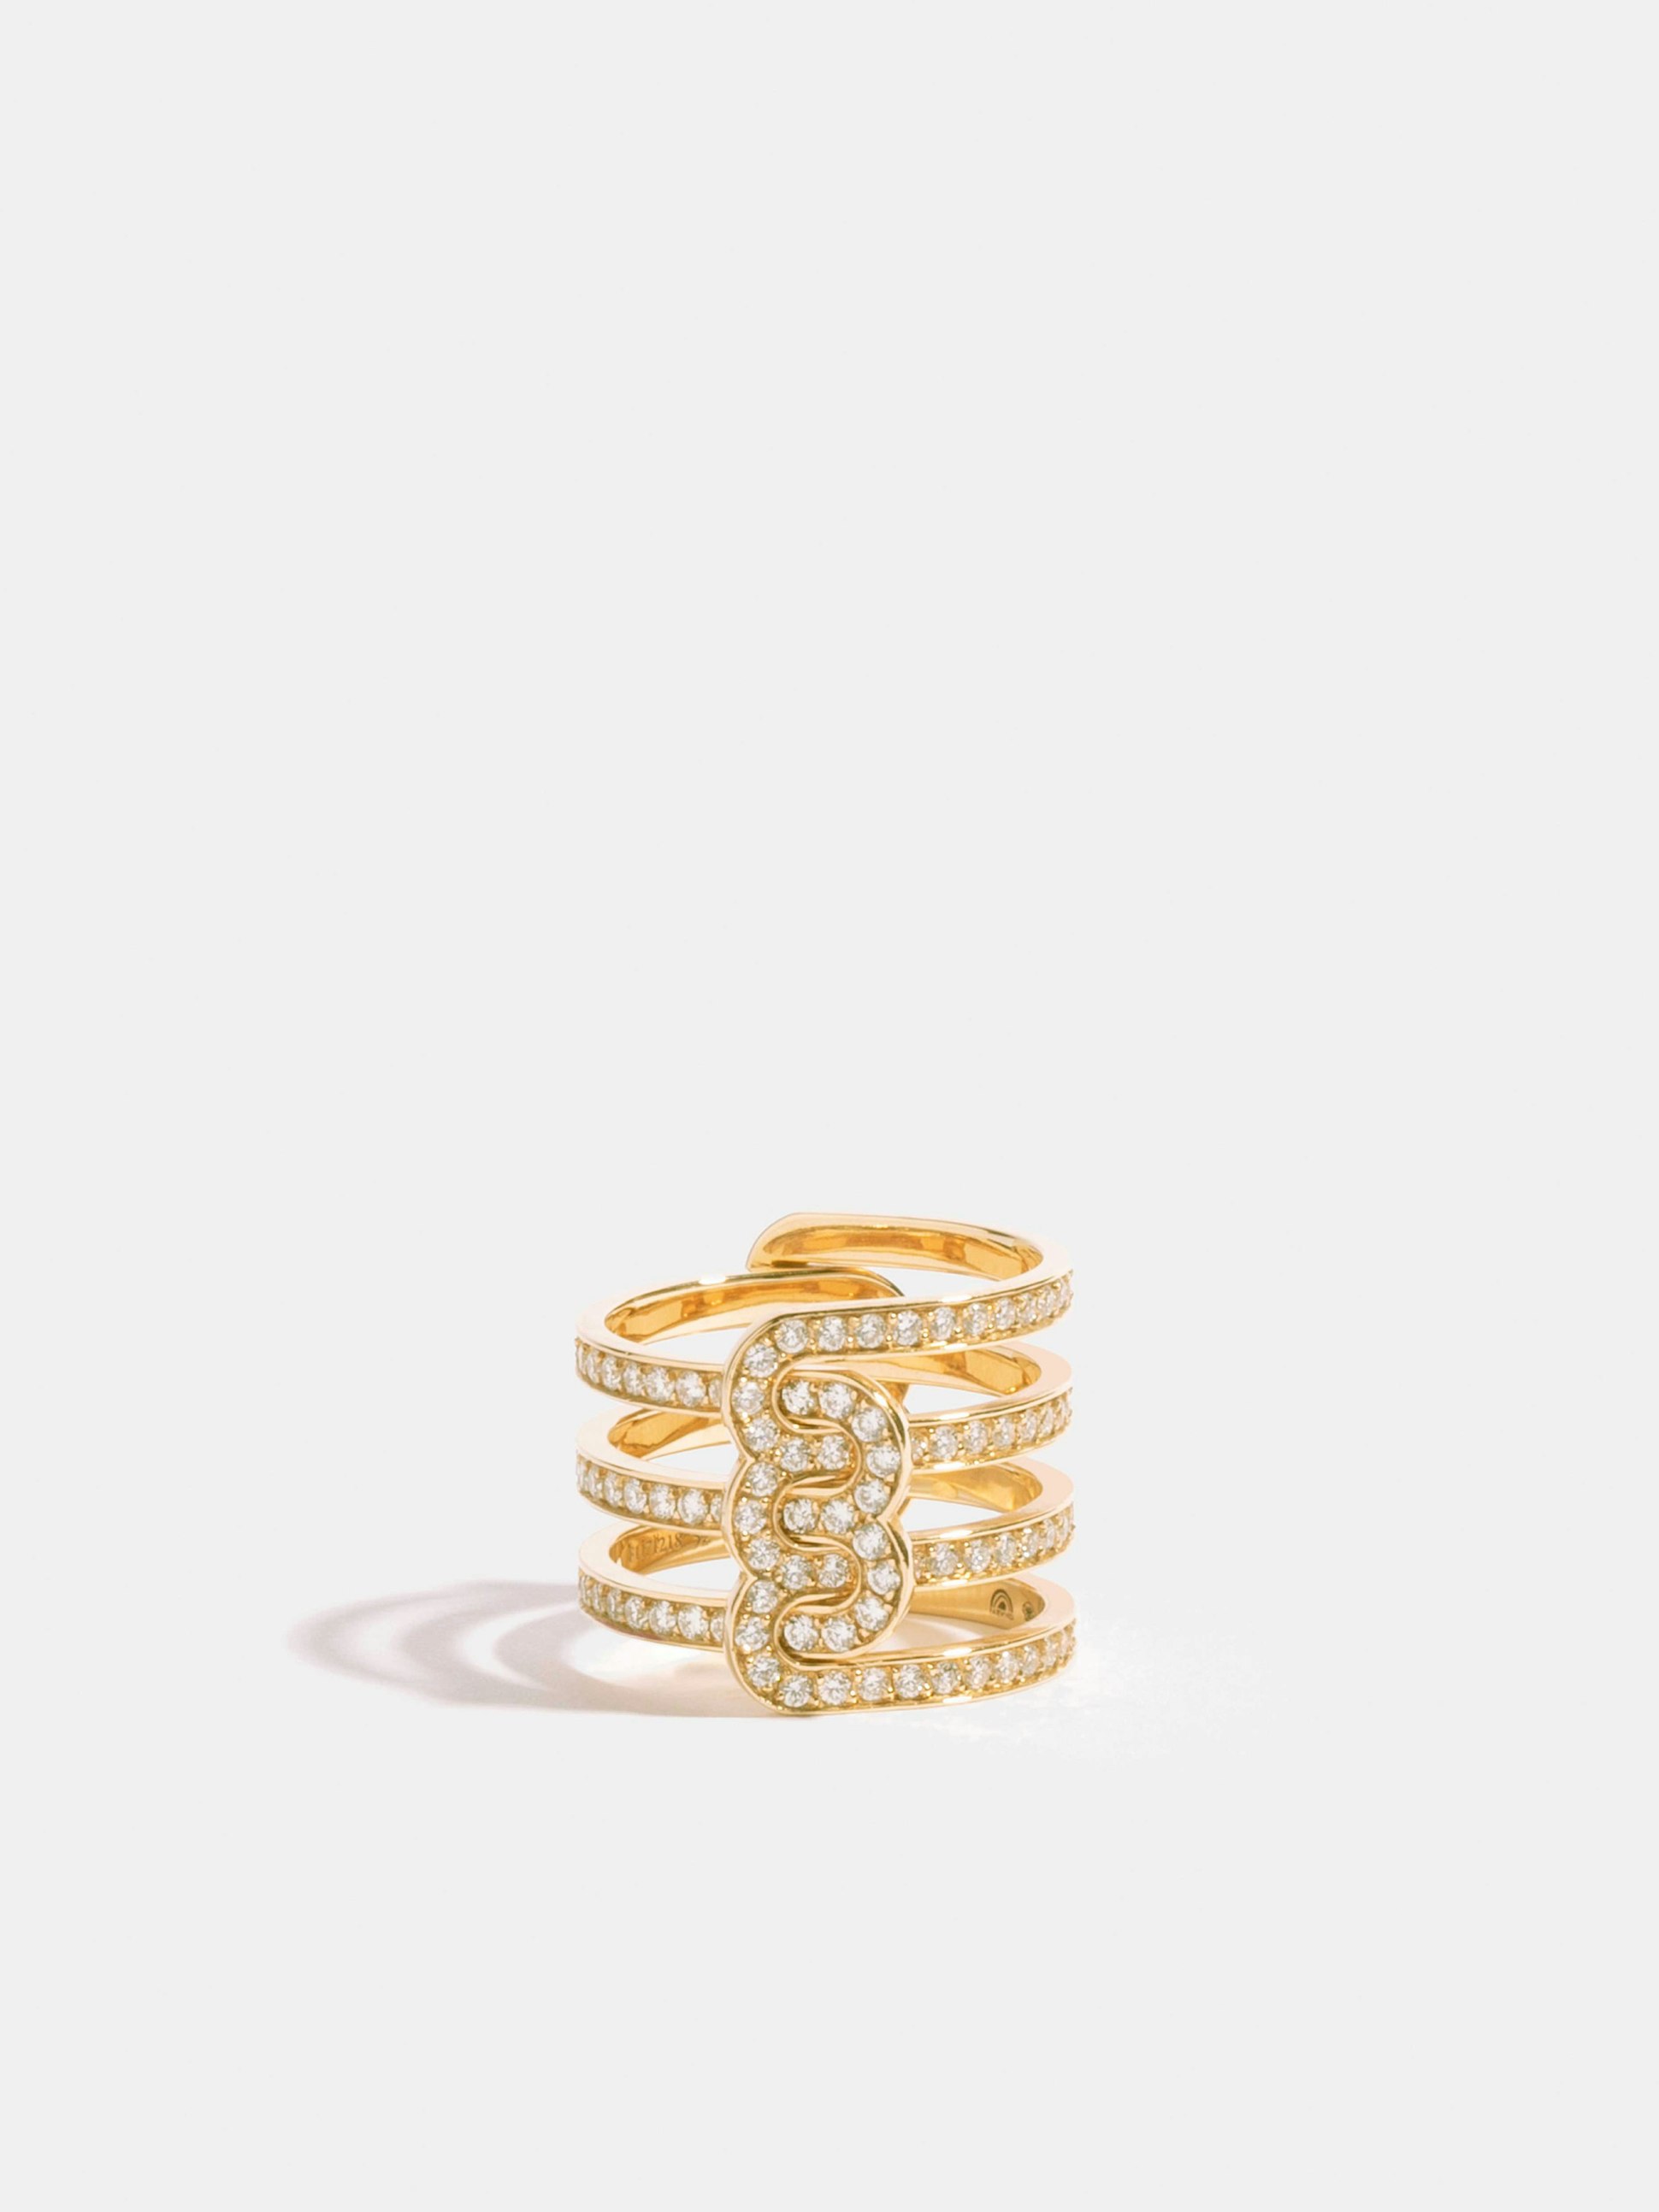 Bague Étreintes en Or jaune éthique 18 carats certifié Fairmined composée d'une demi-bague double pavée en entier de diamants de synthèse et d'une demi-bague triple pavée en entier de diamants de synthèse.